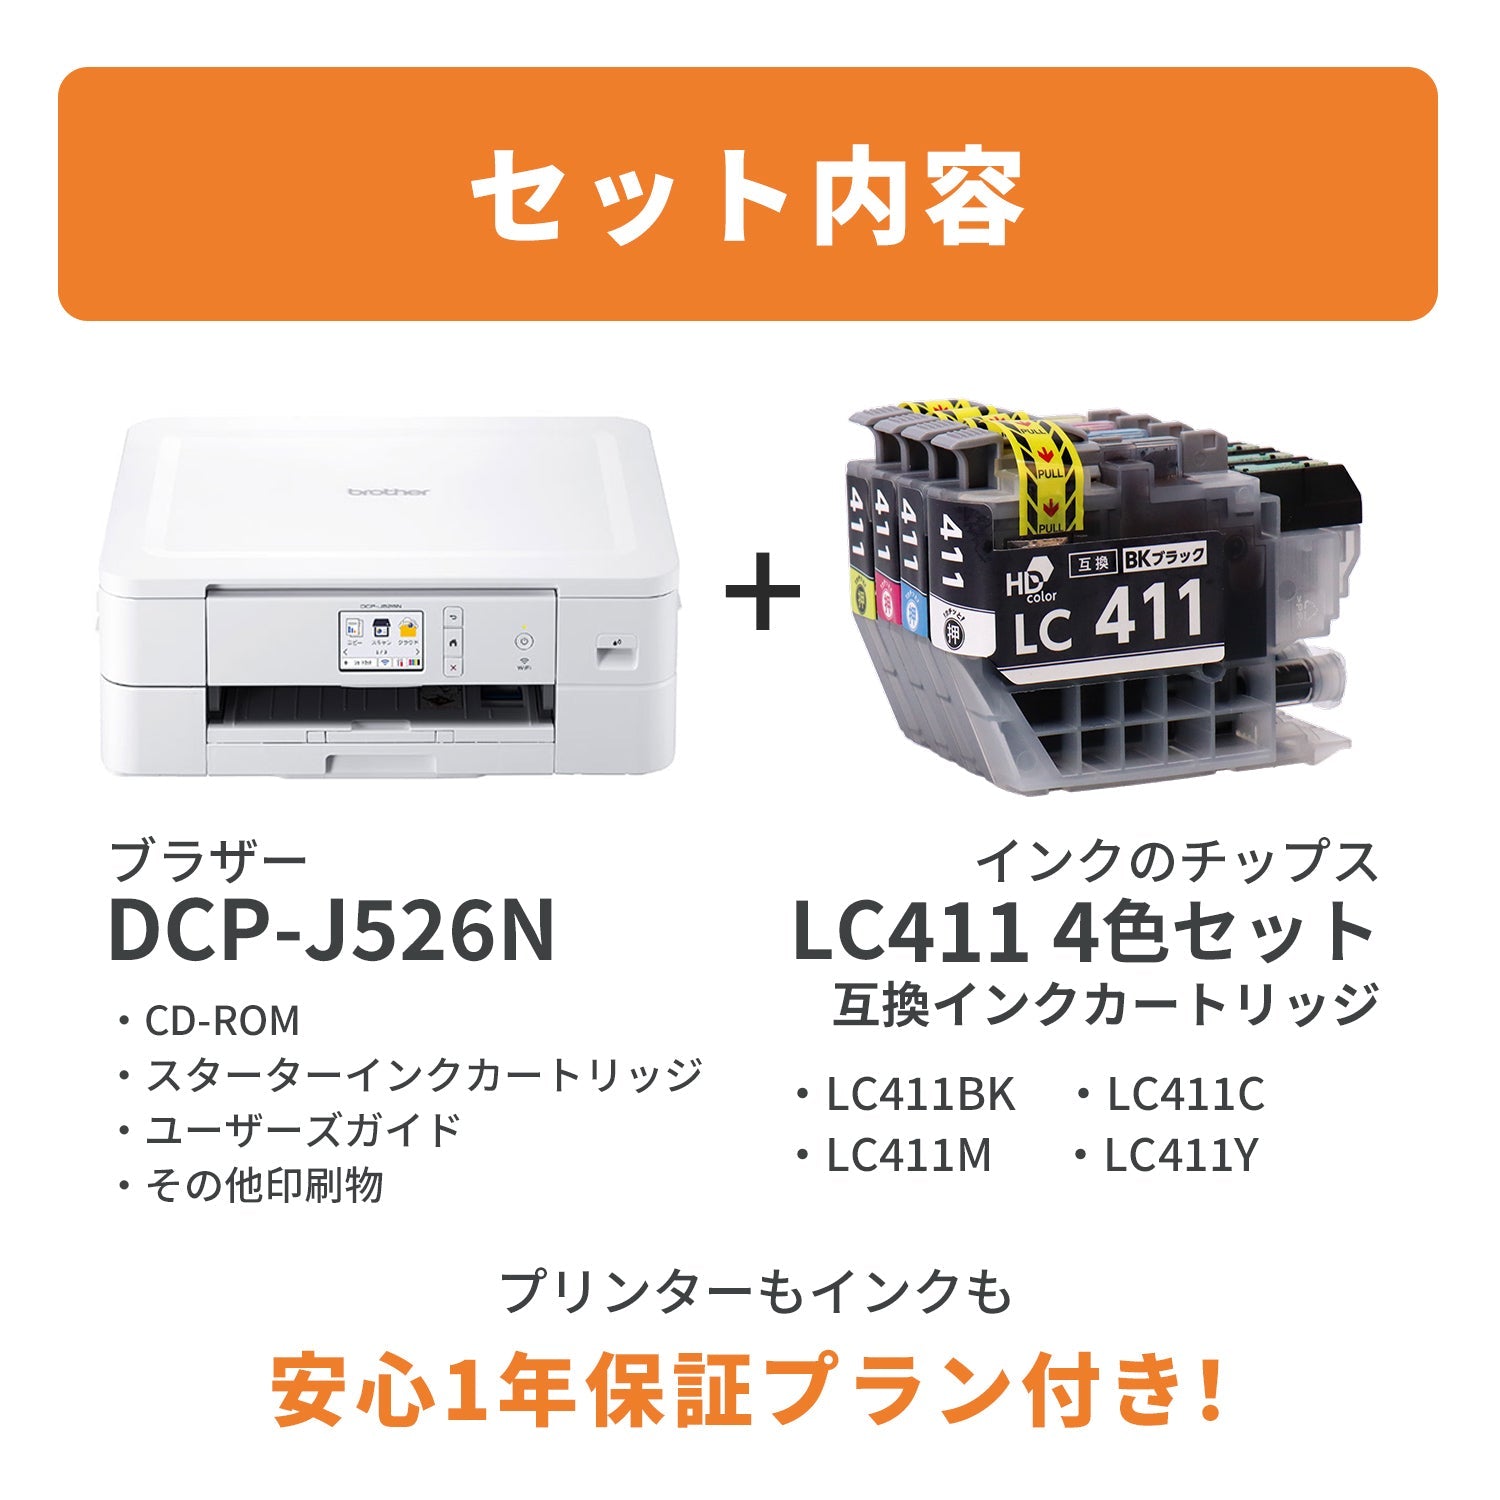 ブラザー PRIVIO DCP-J526N プリンターと互換インクのセット